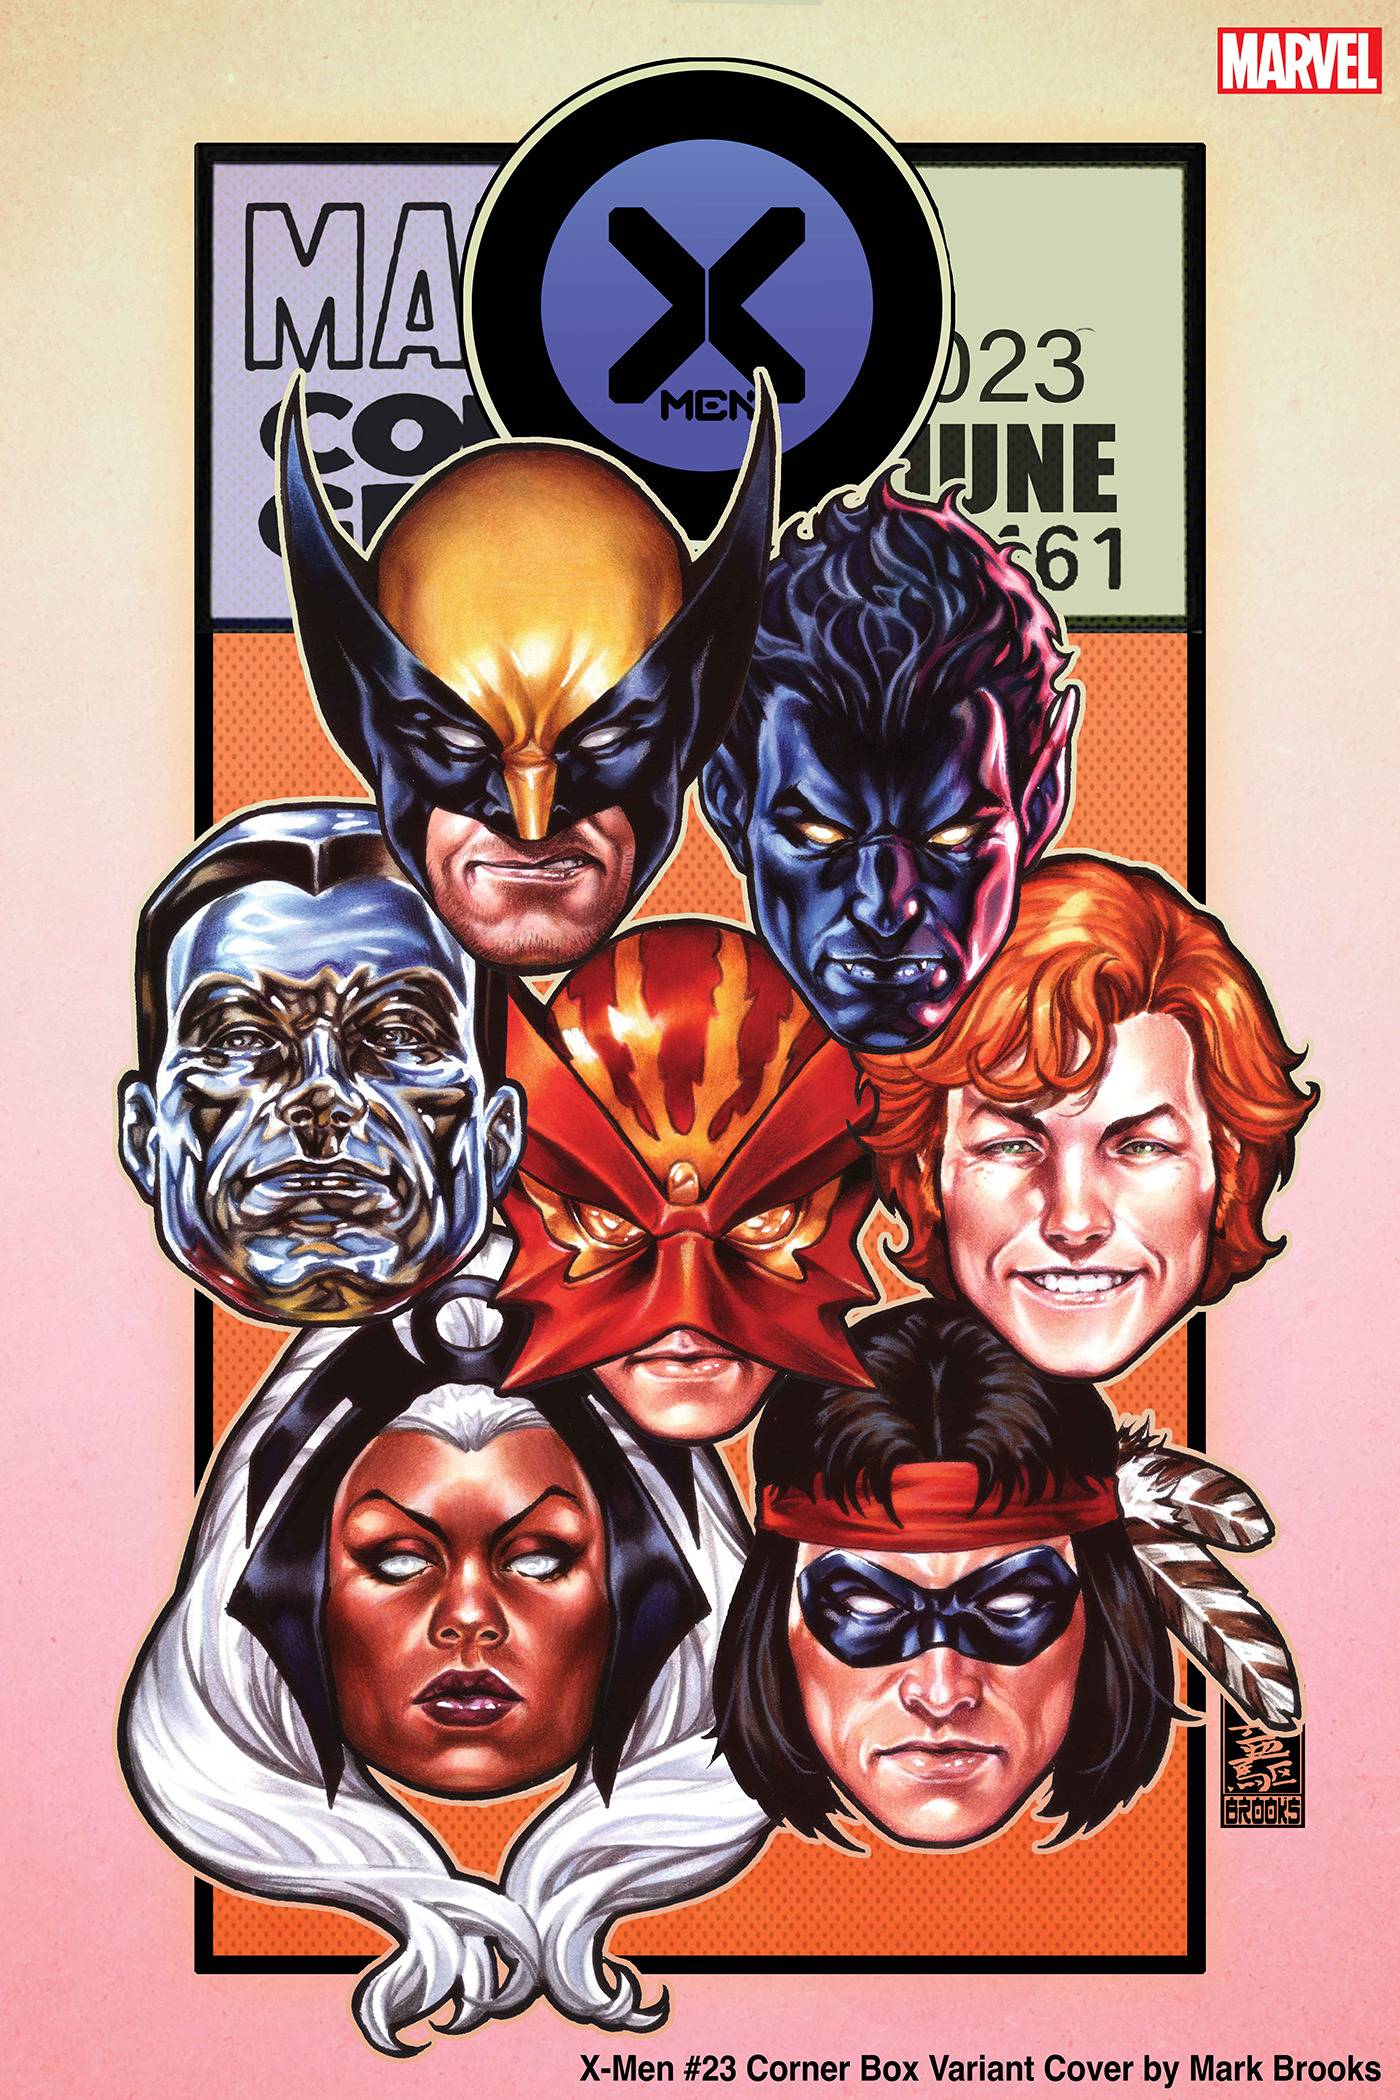 X-Men #23 (2021) Sortie de la boîte d'angle Marvel Brooks 06/07/2023 | BD Cosmos